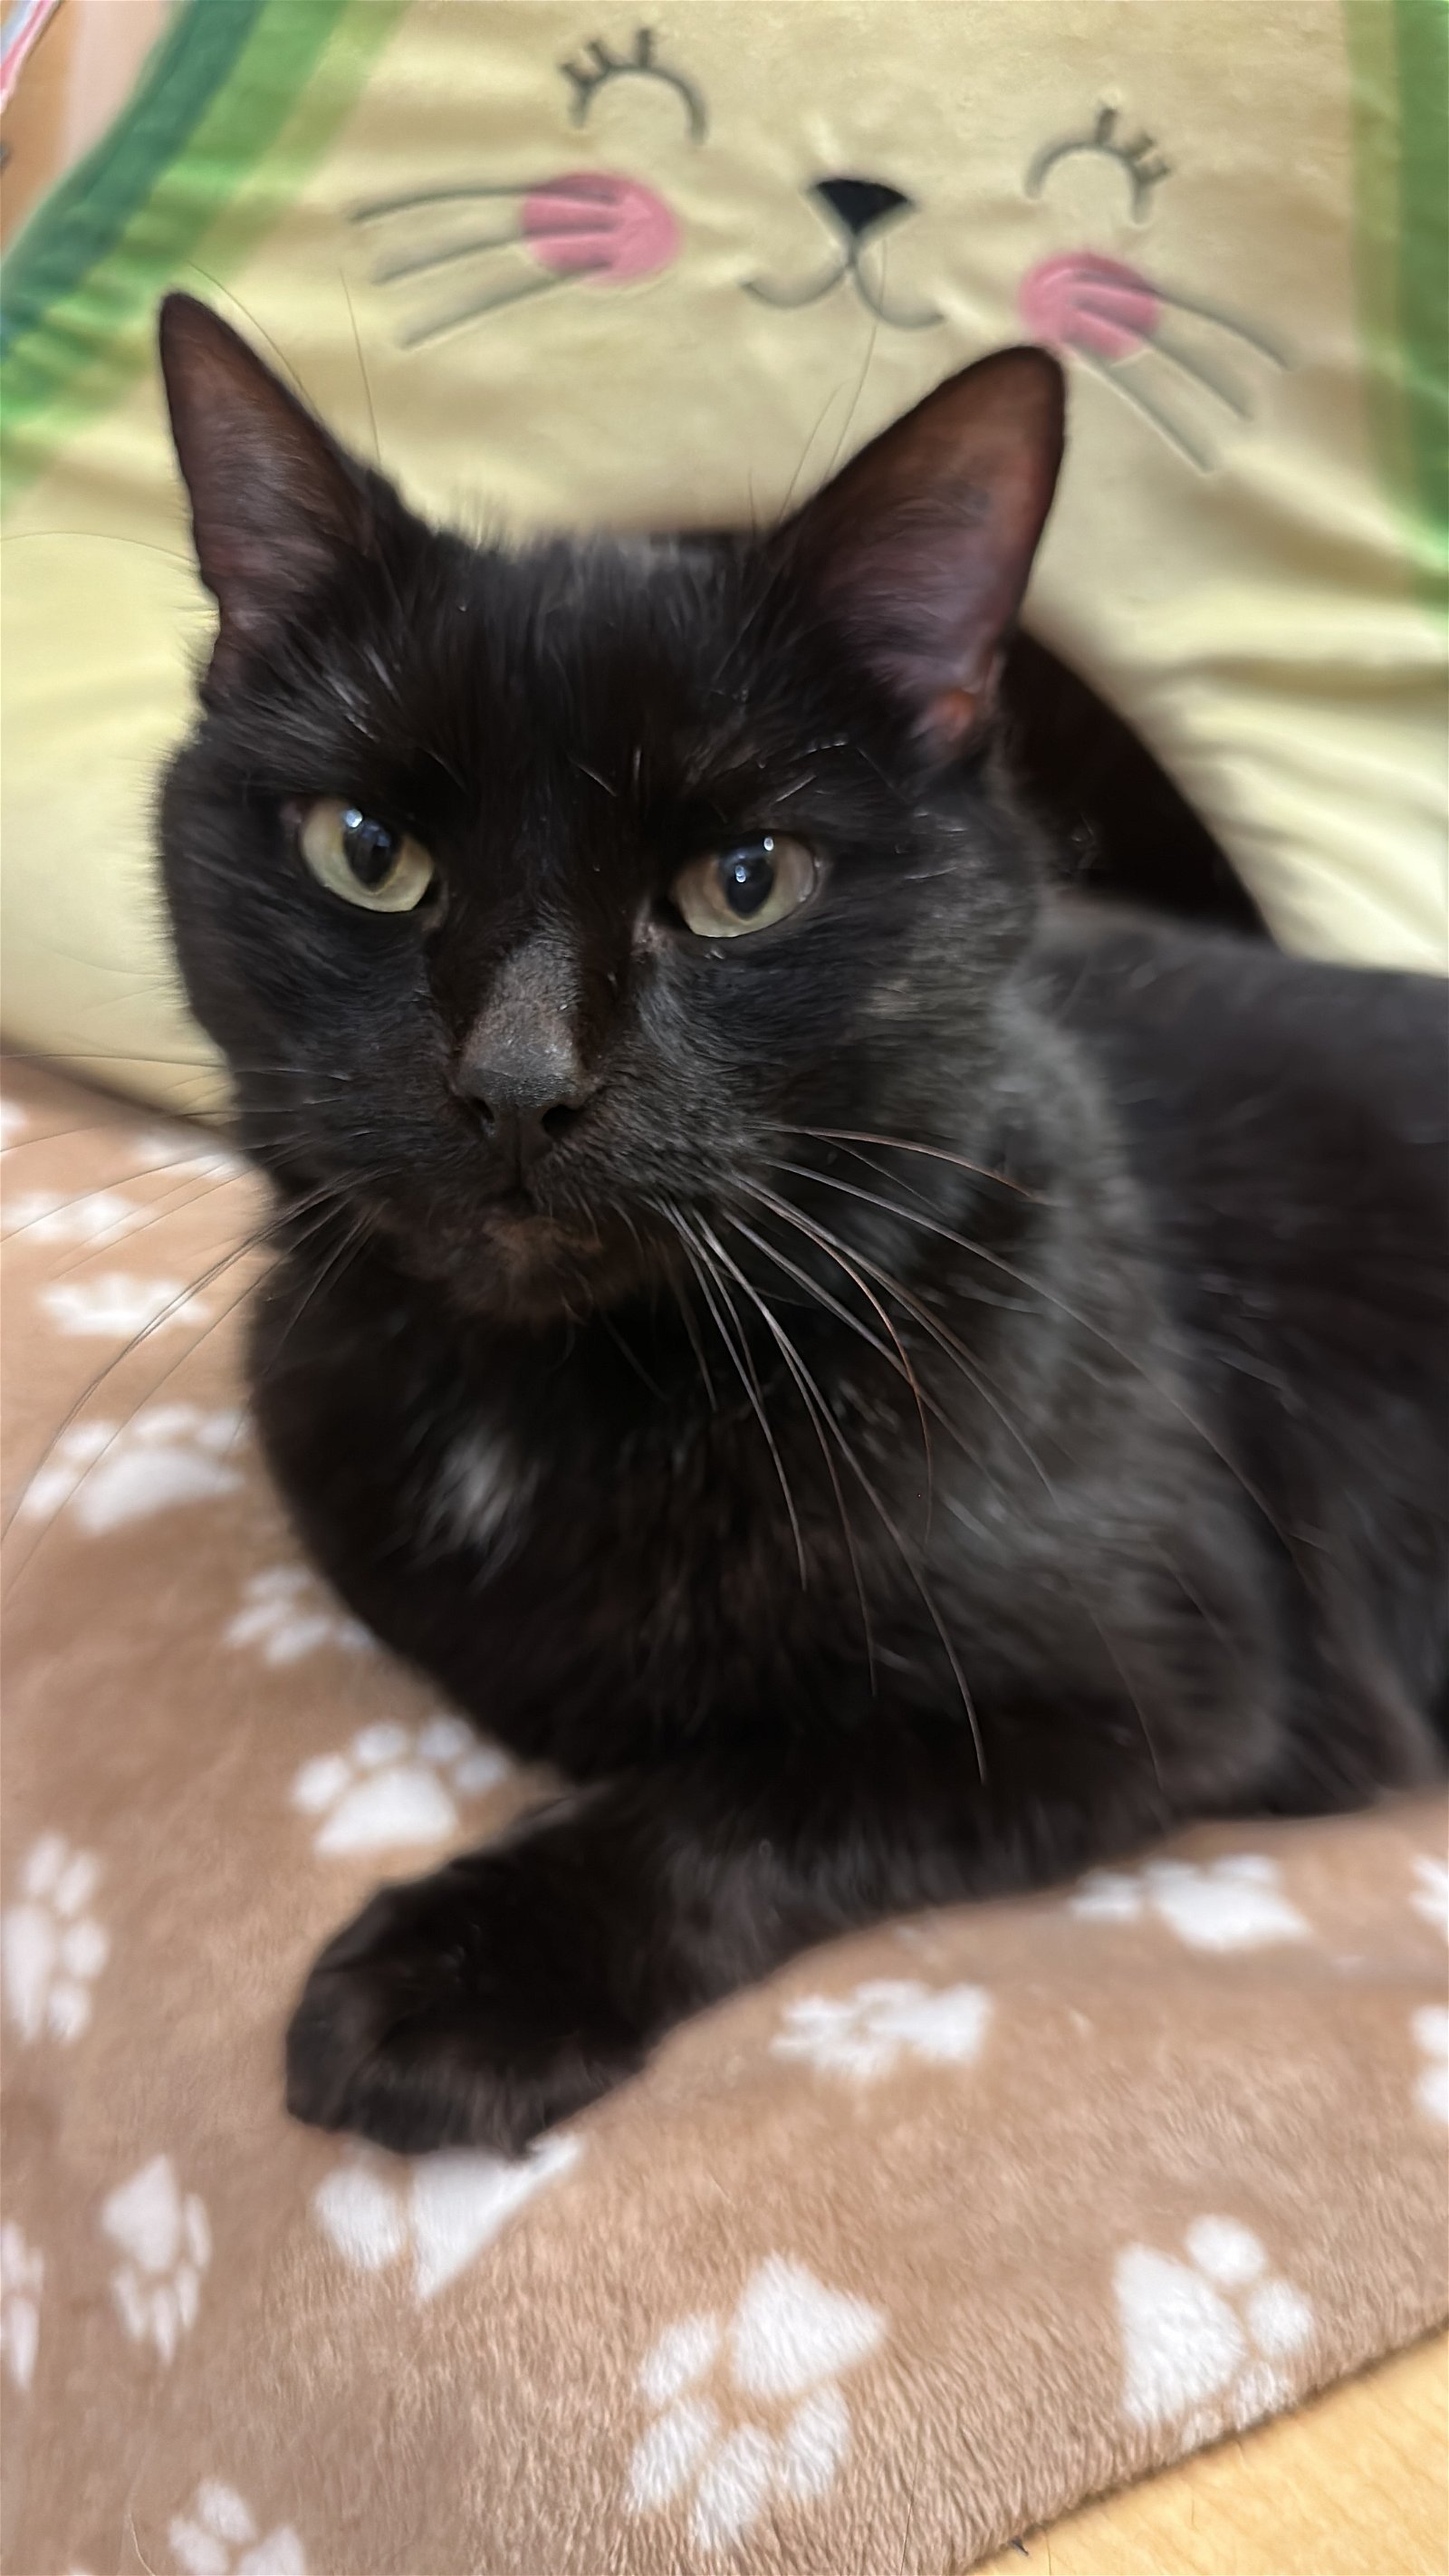 adoptable Cat in Apopka, FL named Mr. Littles 3.20.15